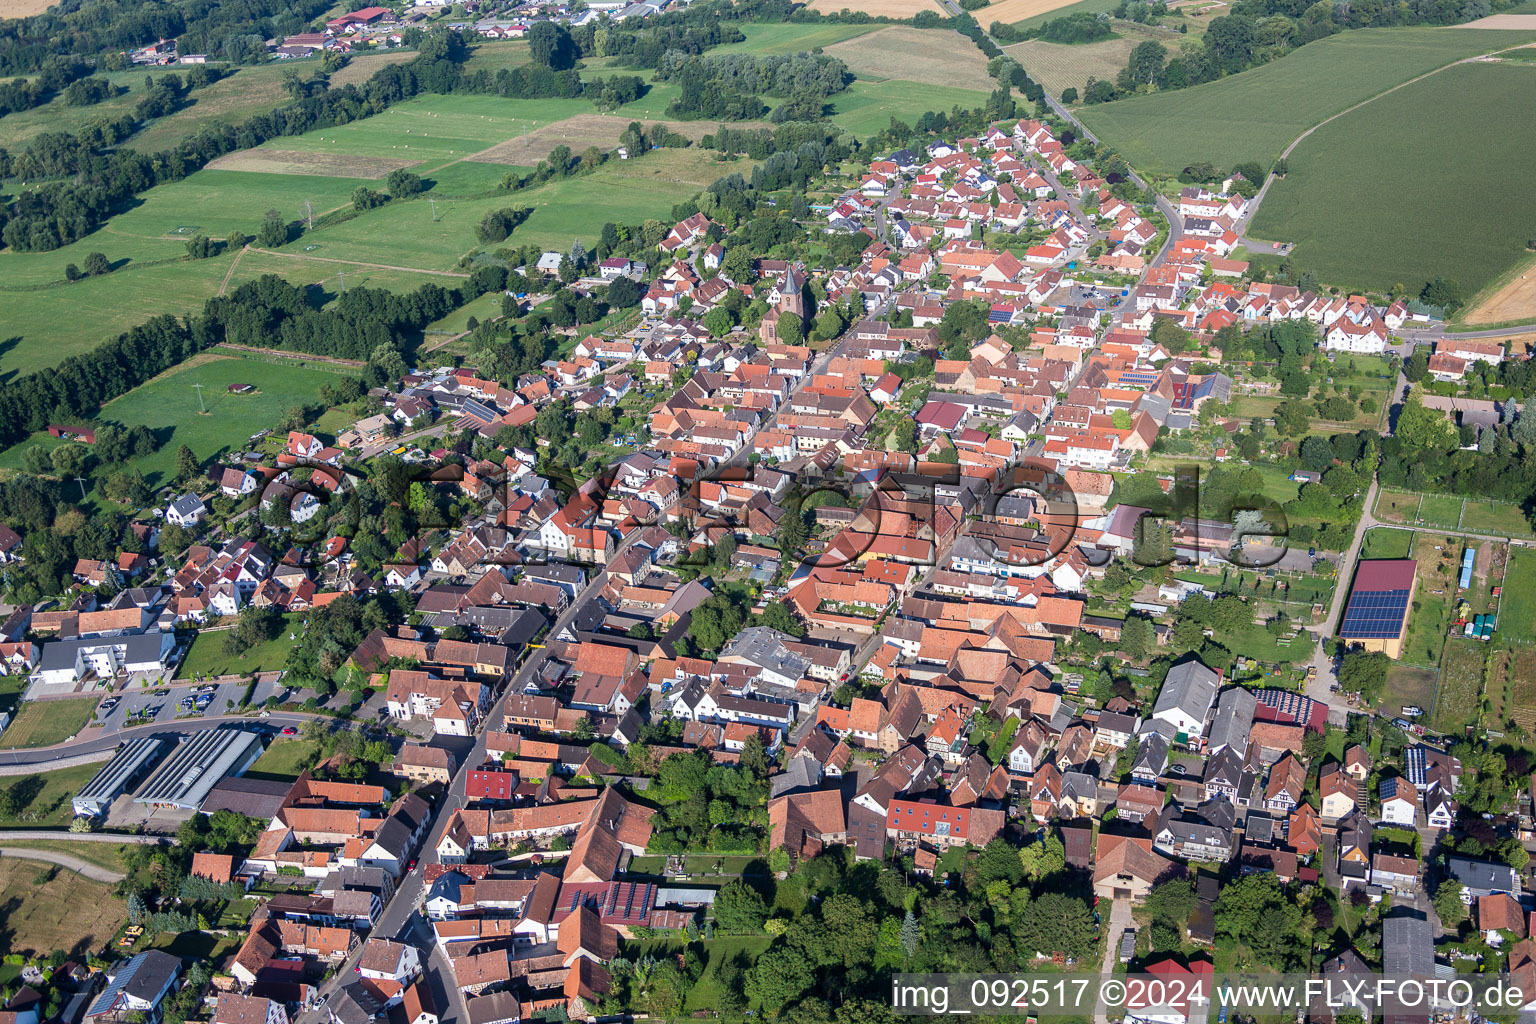 Luftbild von Dorf - Ansicht am Rande von landwirtschaftlichen Feldern und Nutzflächen in Rohrbach im Bundesland Rheinland-Pfalz, Deutschland